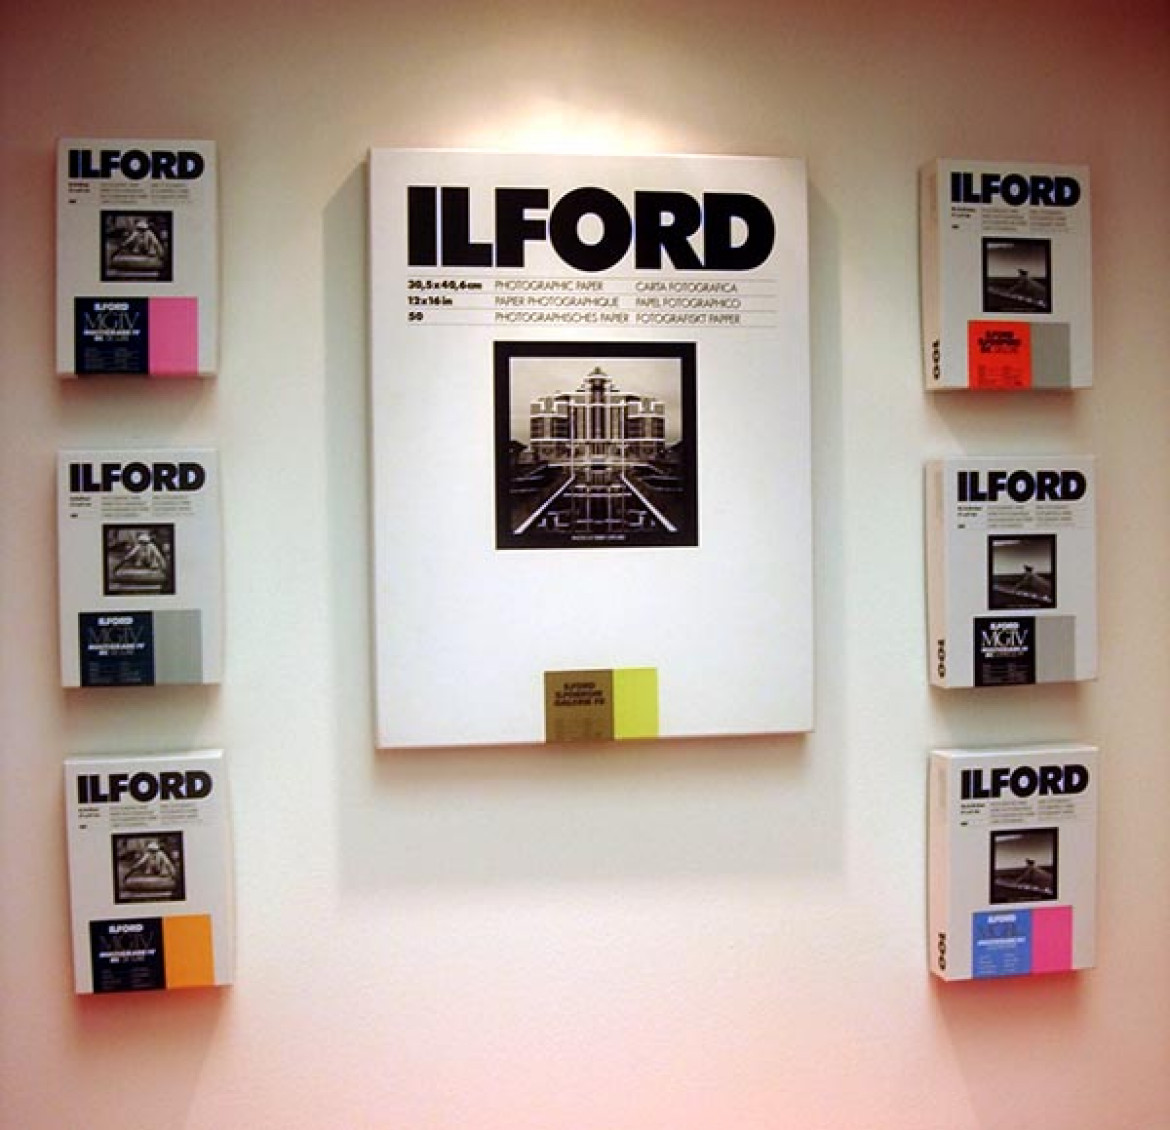 Ilford jako z niewielu firm pokazywał produkty do fotografii tradycyjnej